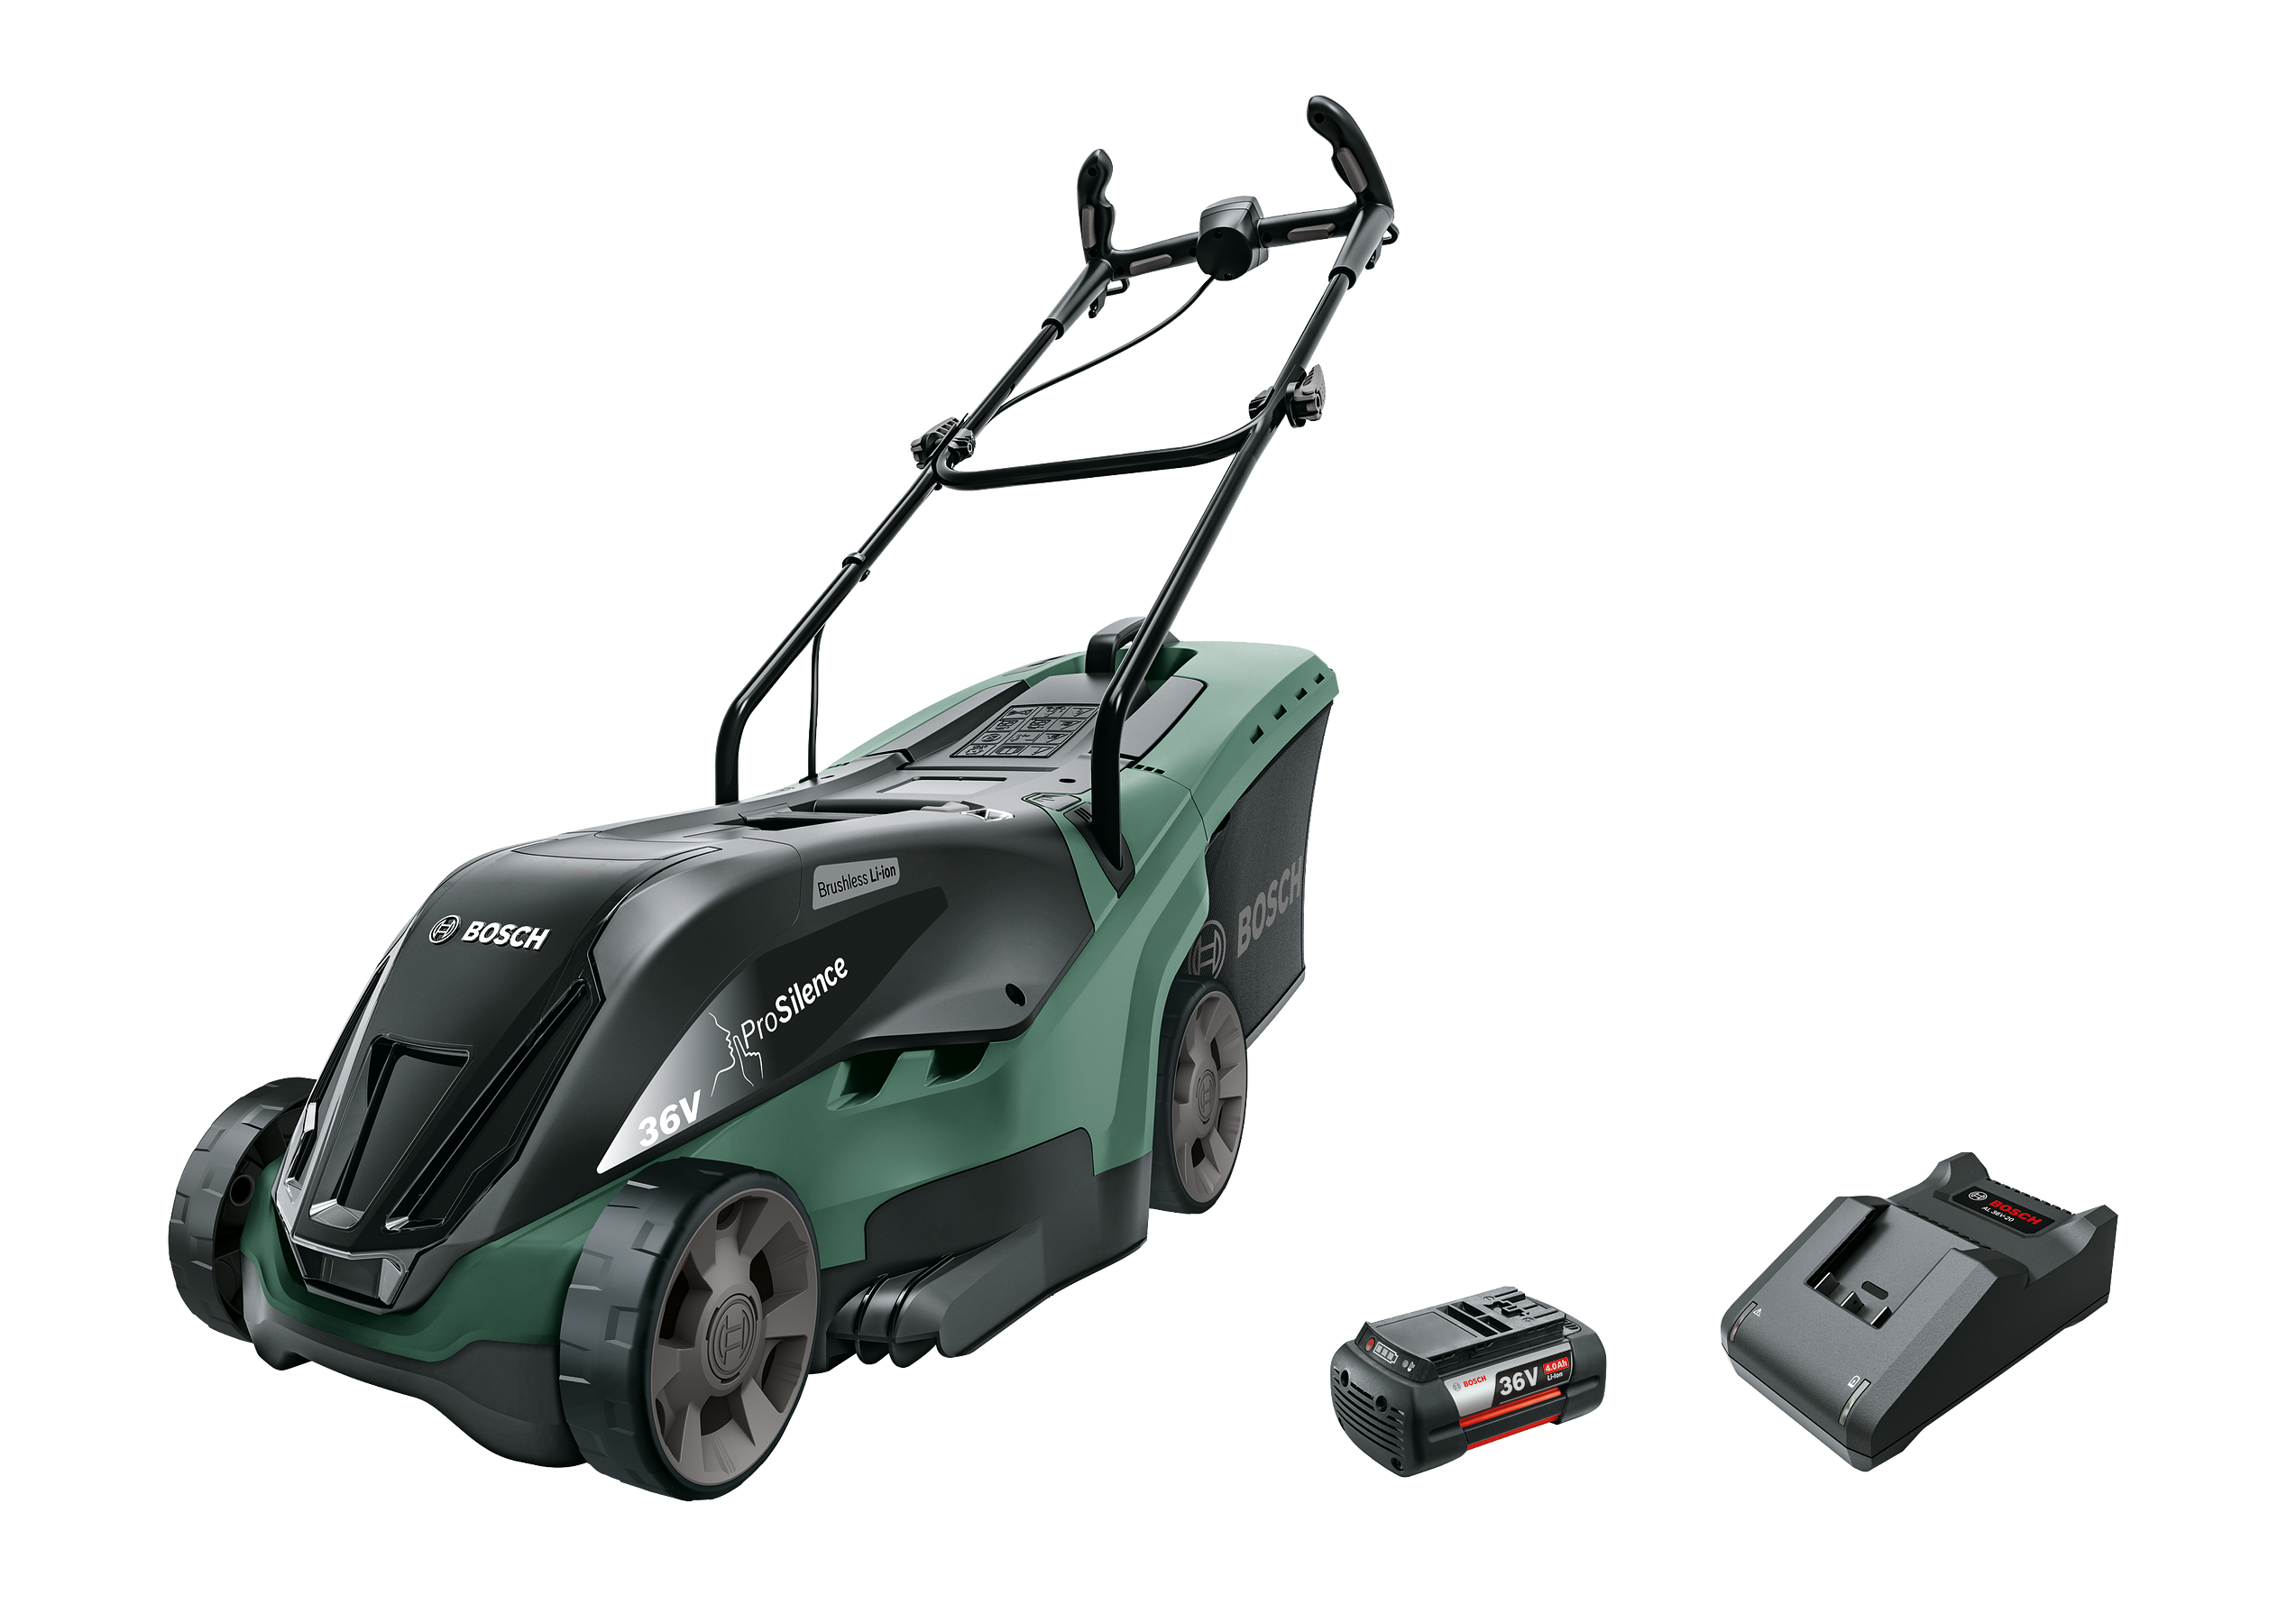 Bosch - UniversalRotak 36-550 Græsslåmaskine  (Batteri & Oplader inkluderet)